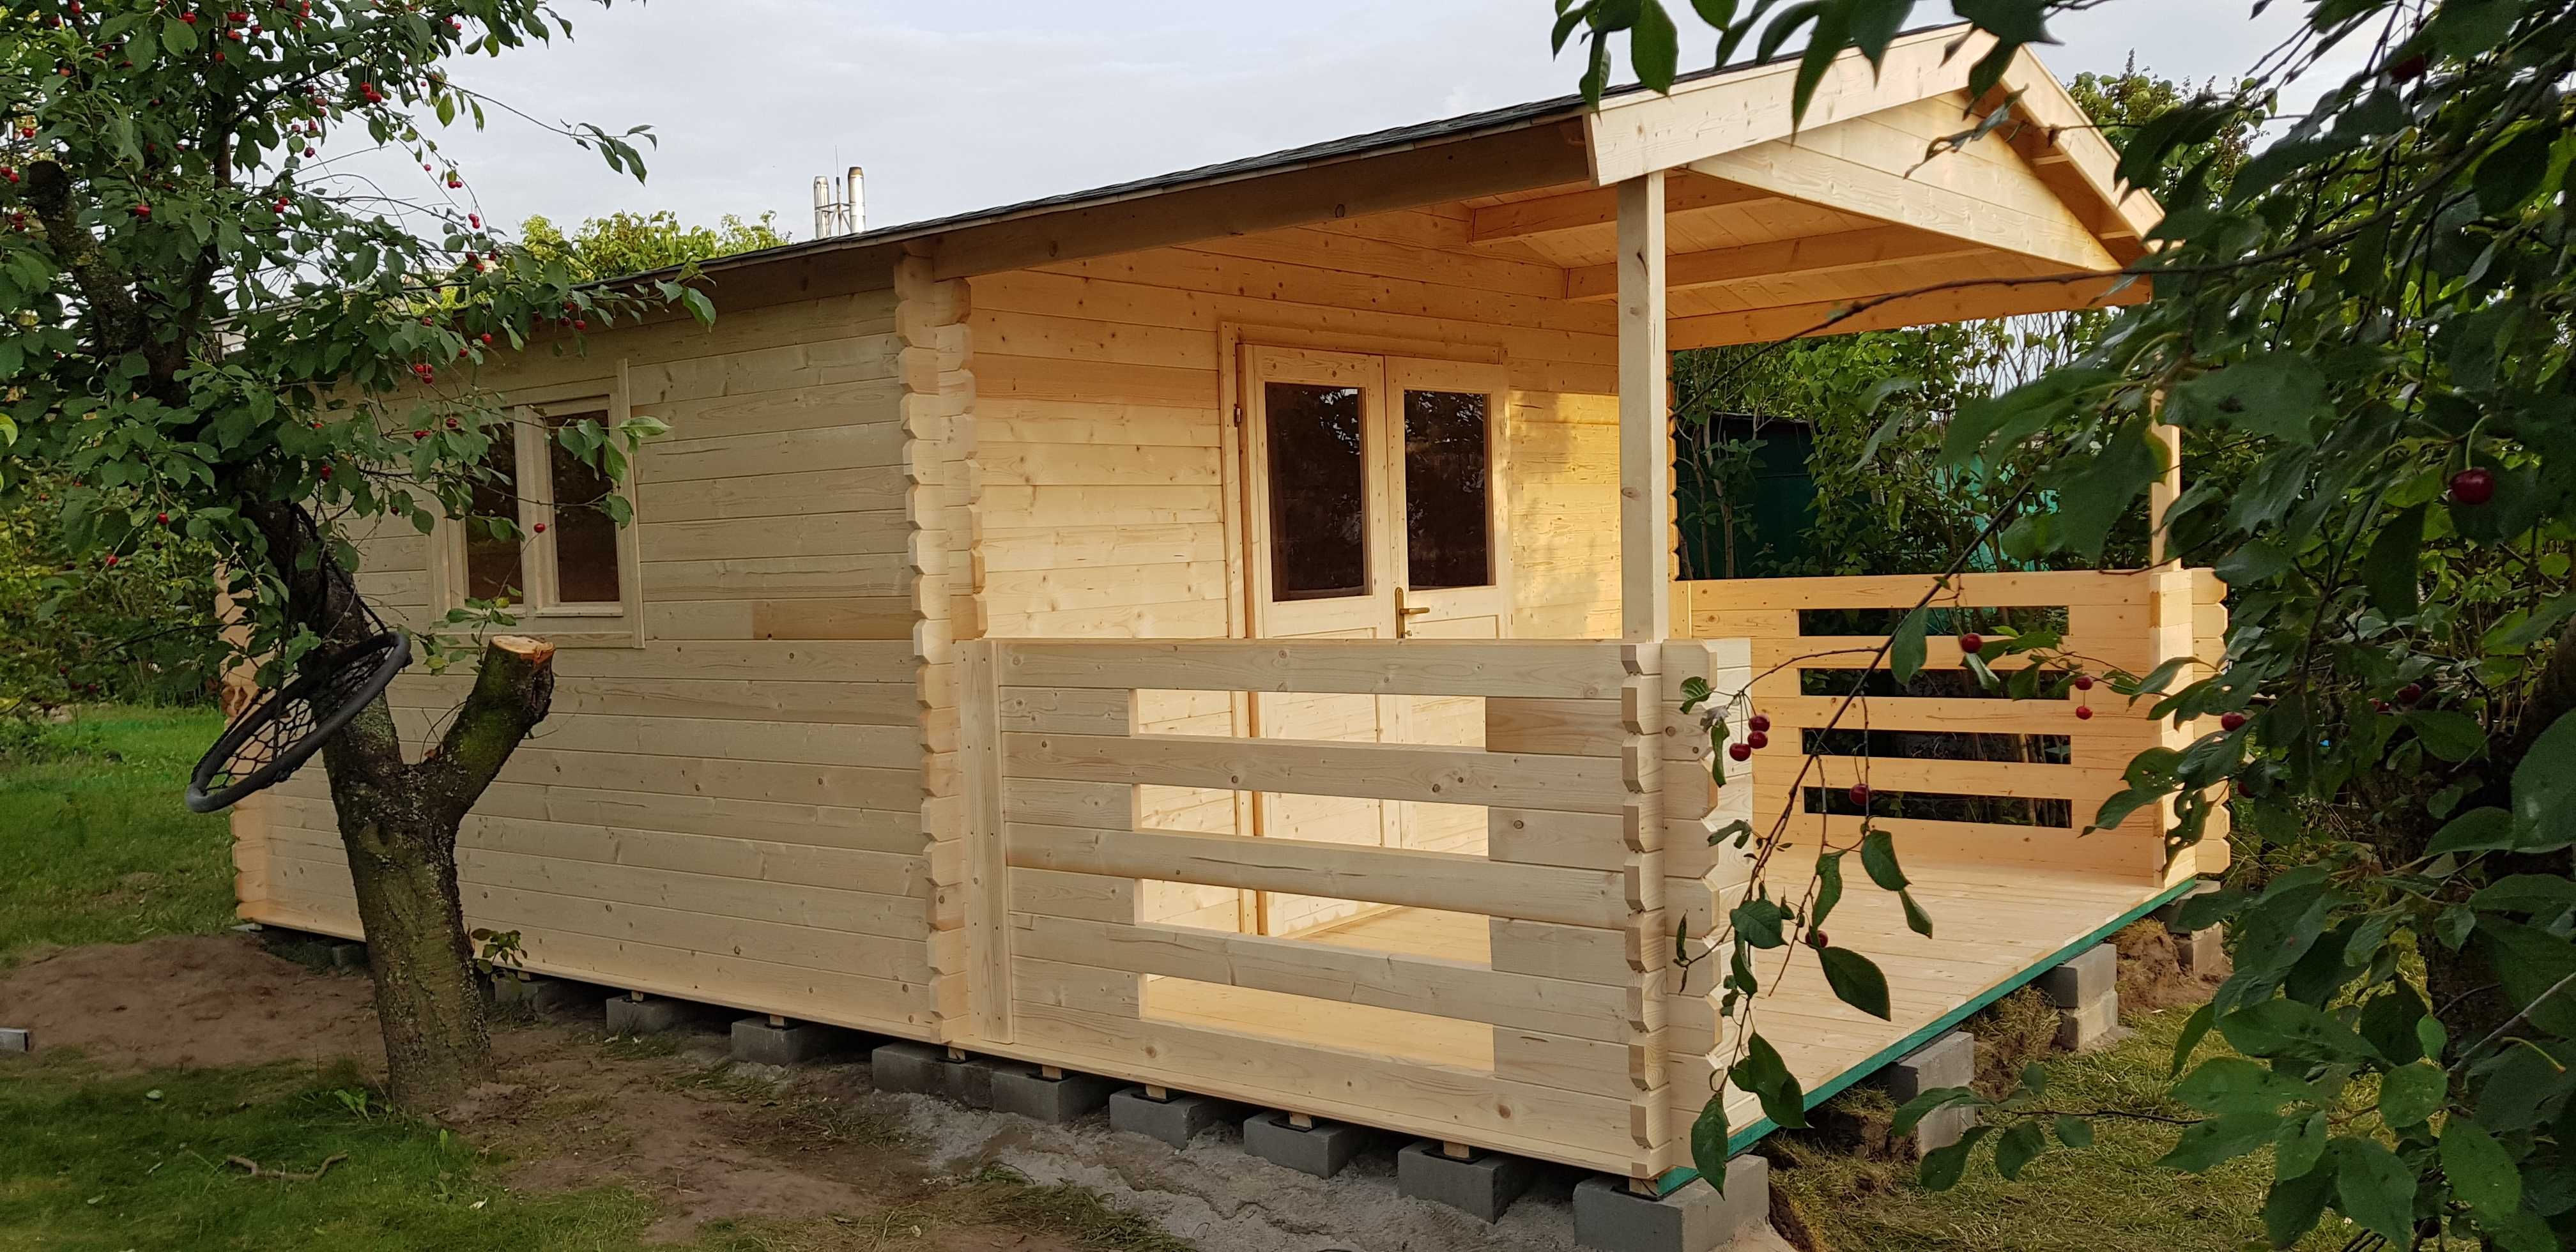 ogrodowy LETNISKOWY domek drewniany z TARASEM *6m x 4m *24 m2 balik 34